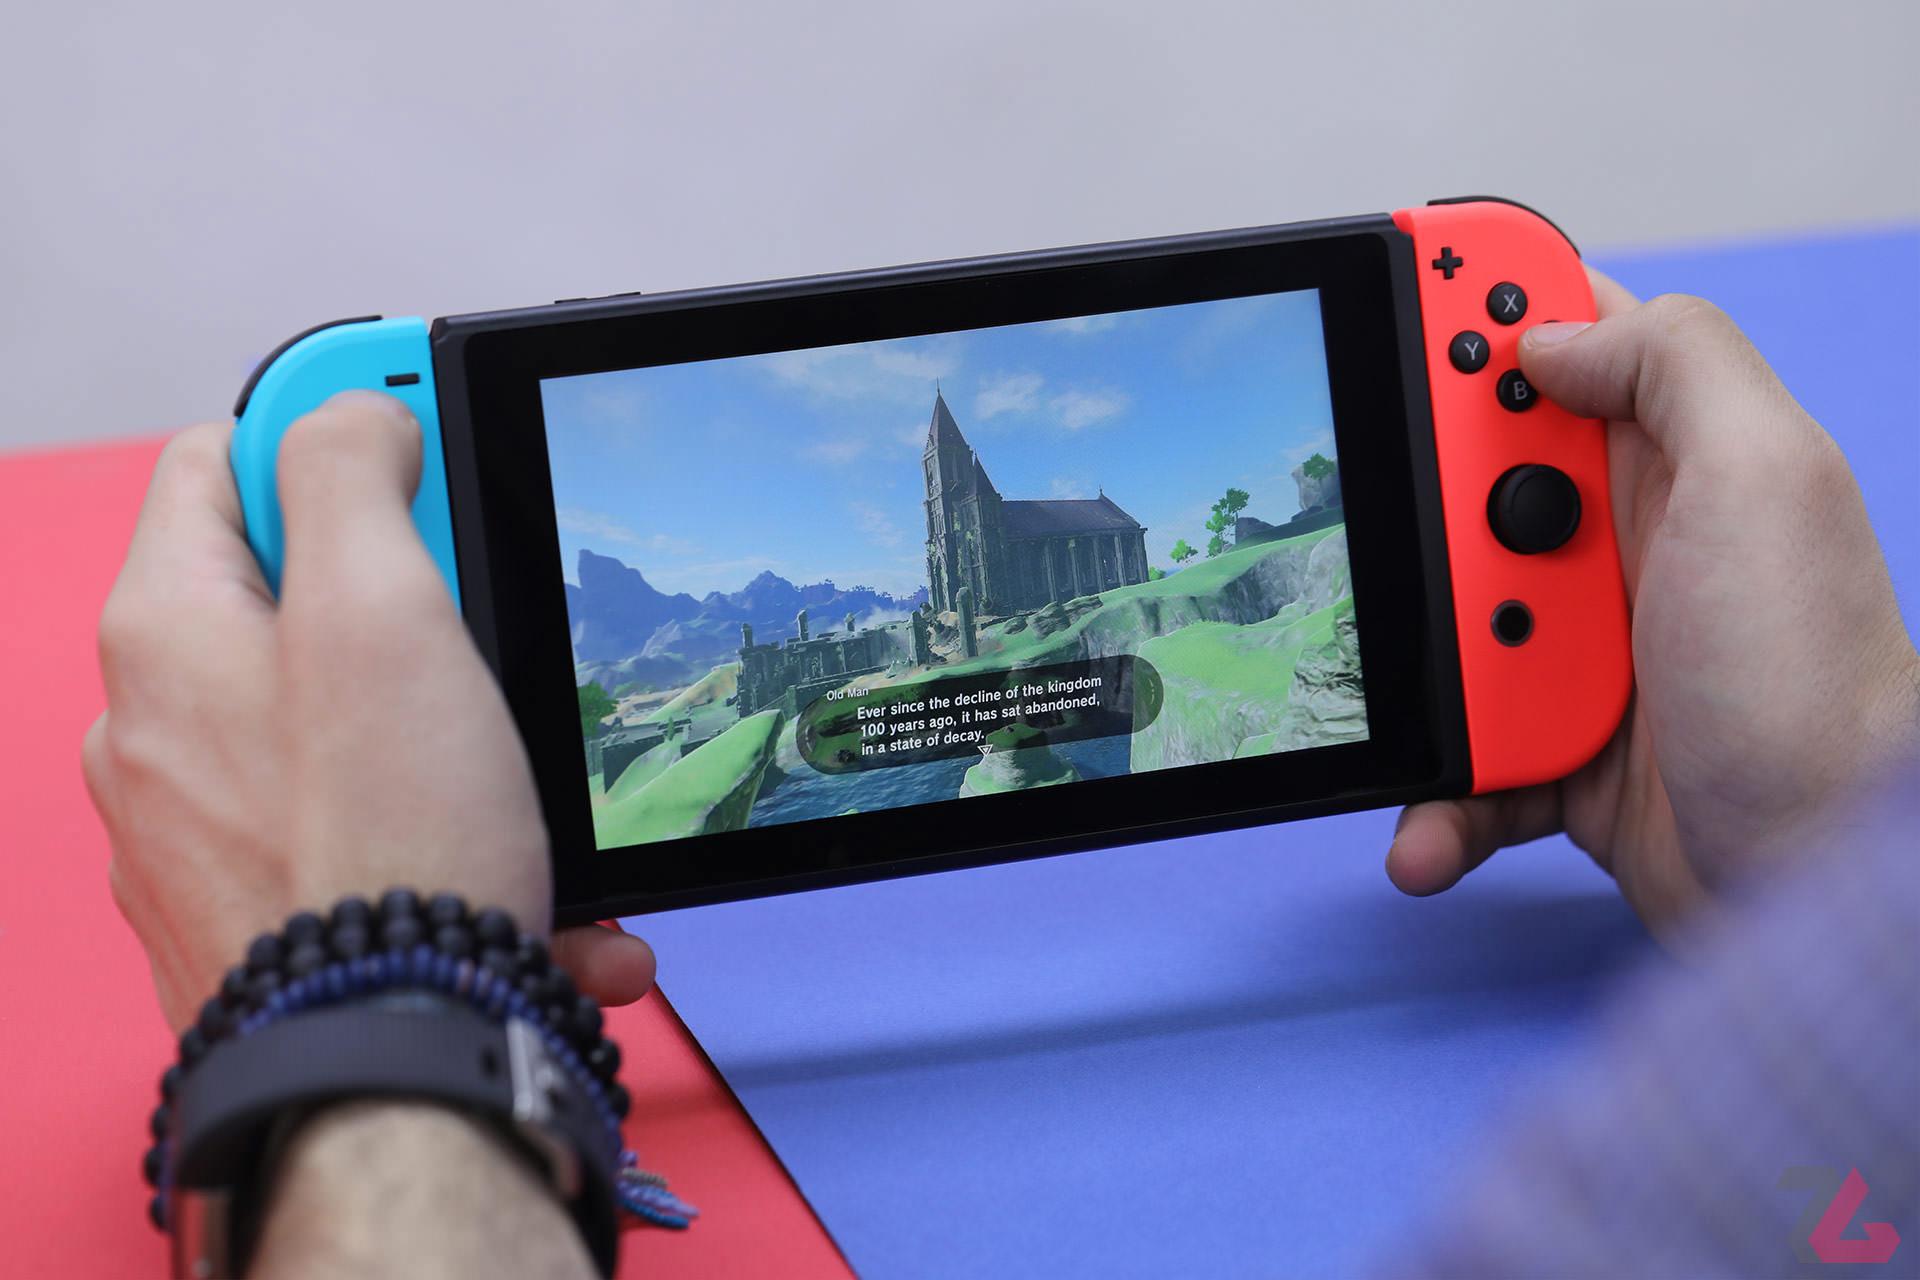 مرجع متخصصين ايران كنسول نينتندو سوييچ / Nintendo Switch در دست درحال اجراي بازي زلدا